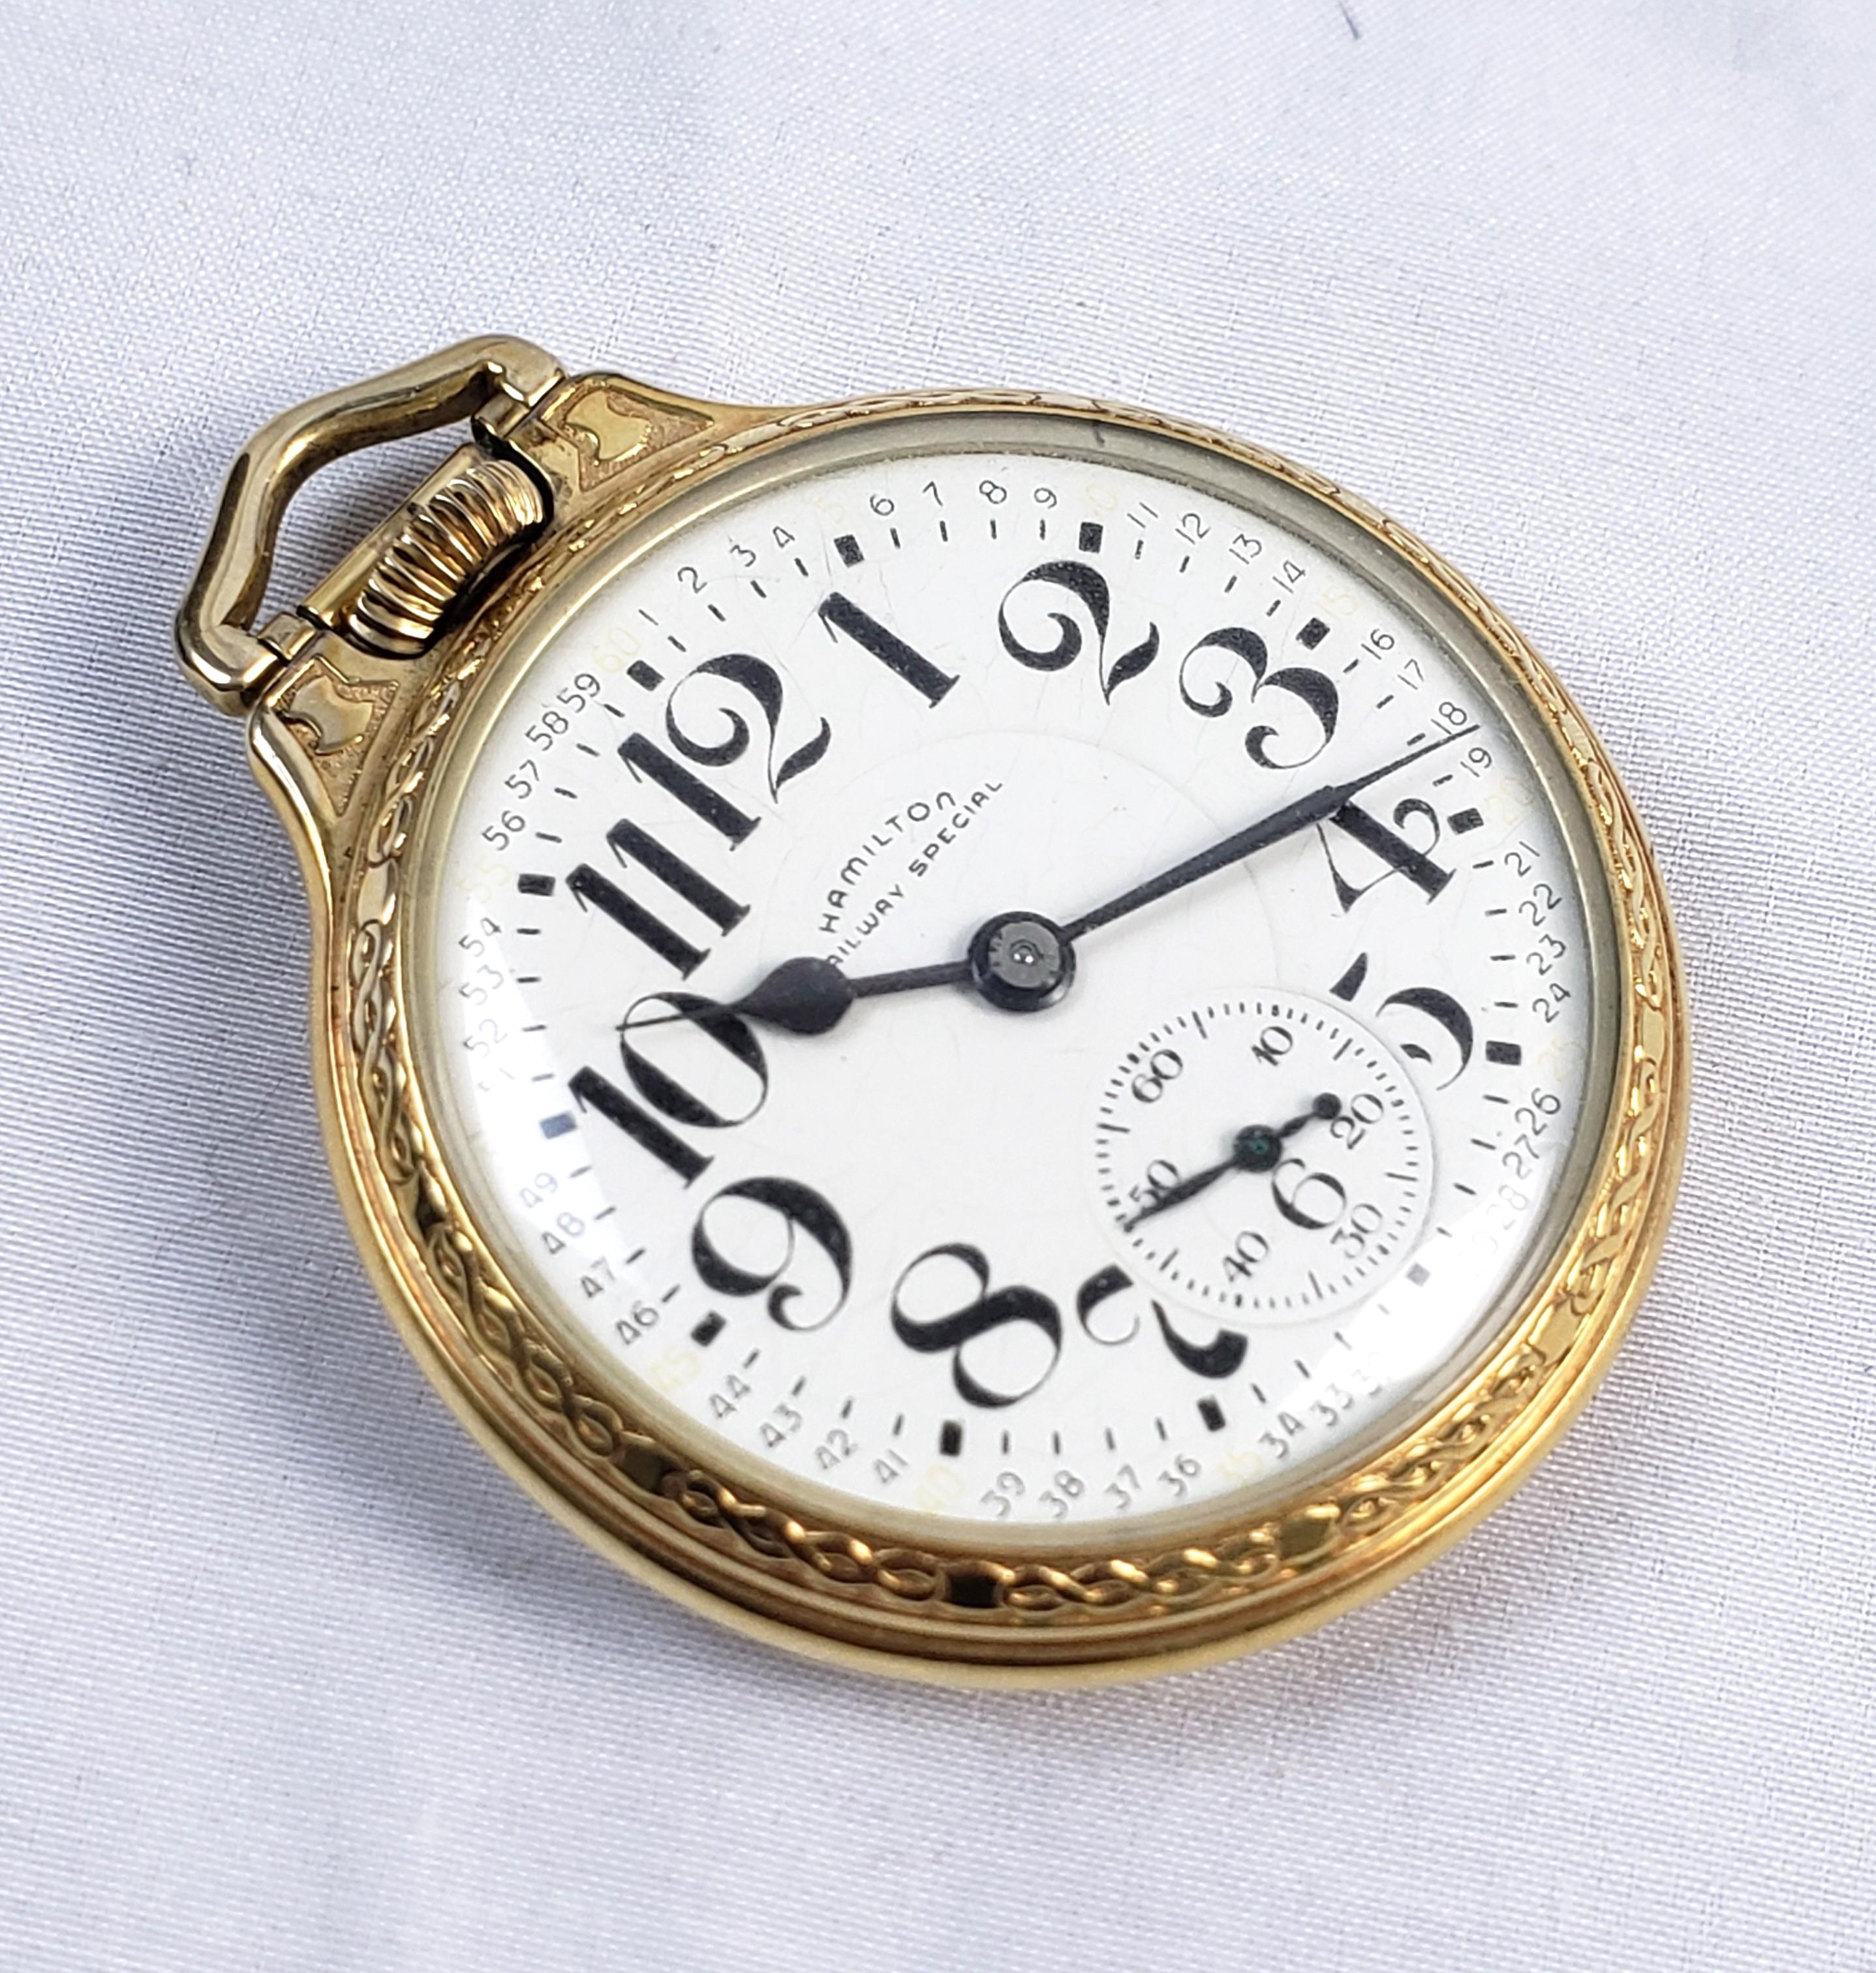 Cette montre de poche ancienne a été fabriquée par la célèbre société horlogère américaine Hamilton vers 1920. La montre est en bon état de marche avec un cadran en porcelaine blanche et de grands chiffres arabes. Le boîtier est rempli d'or et